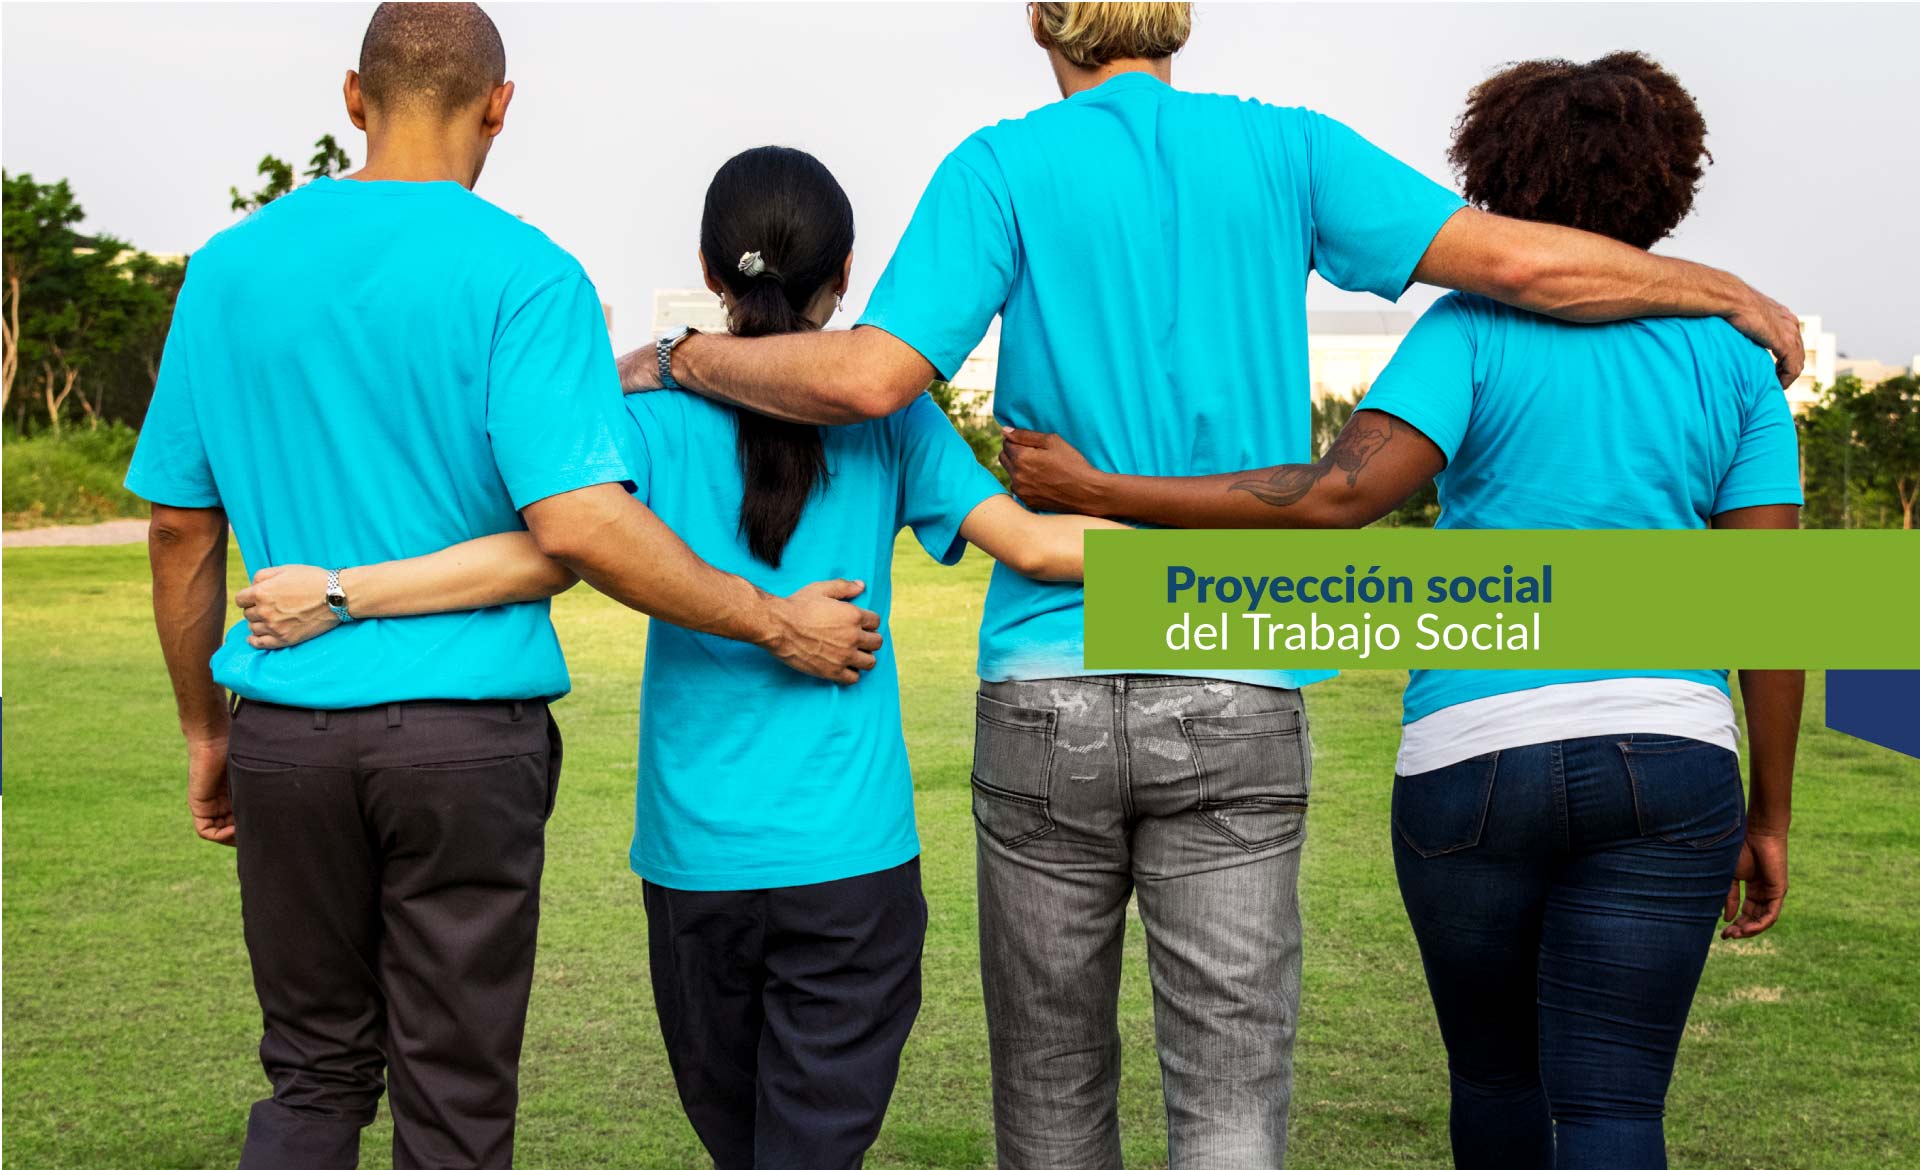 Grupo - Proyección social del trabajo social